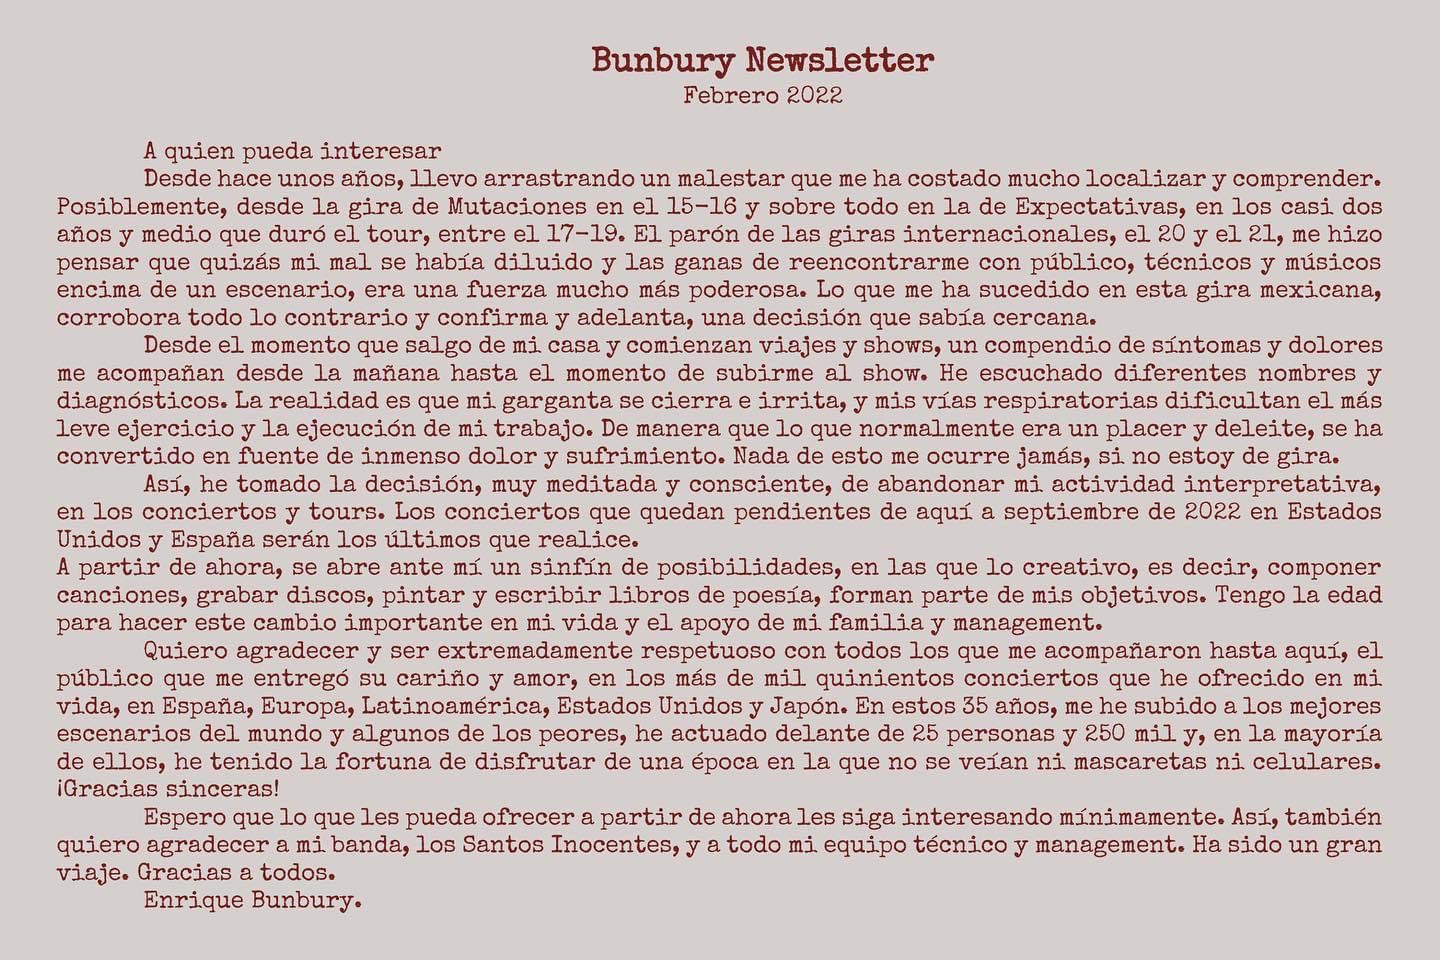 Enrique Bunbury, Heroes del Silencio